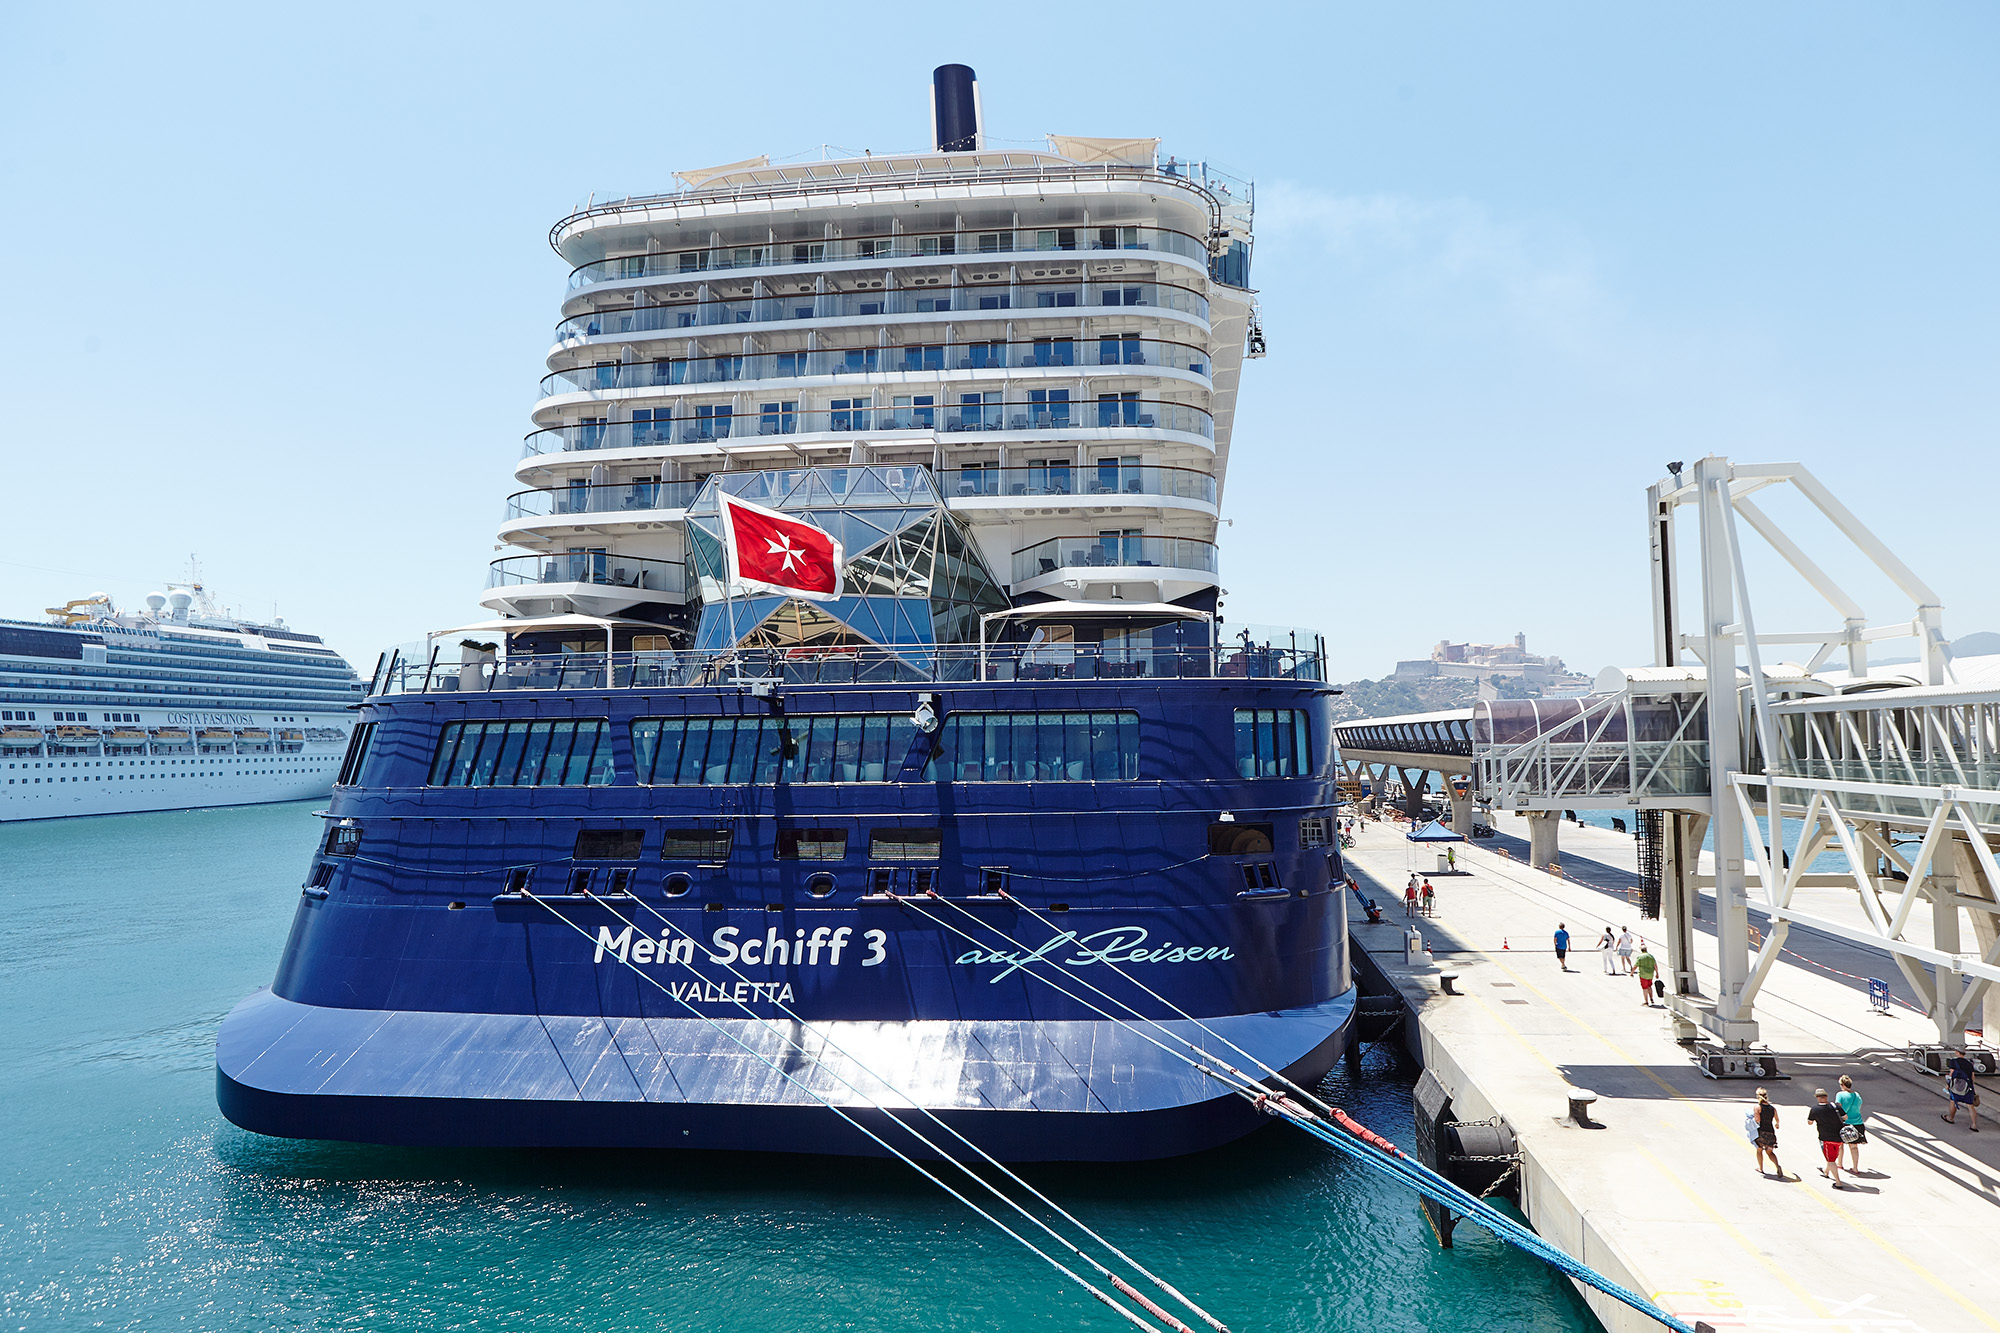 Die gute Zusammenarbeit zwischen der öffentlichen Verwaltung und Unternehmen aus der Branche erklären die erfolgreiche Saison der Kreuzfahrtschifffahrt auf Ibiza